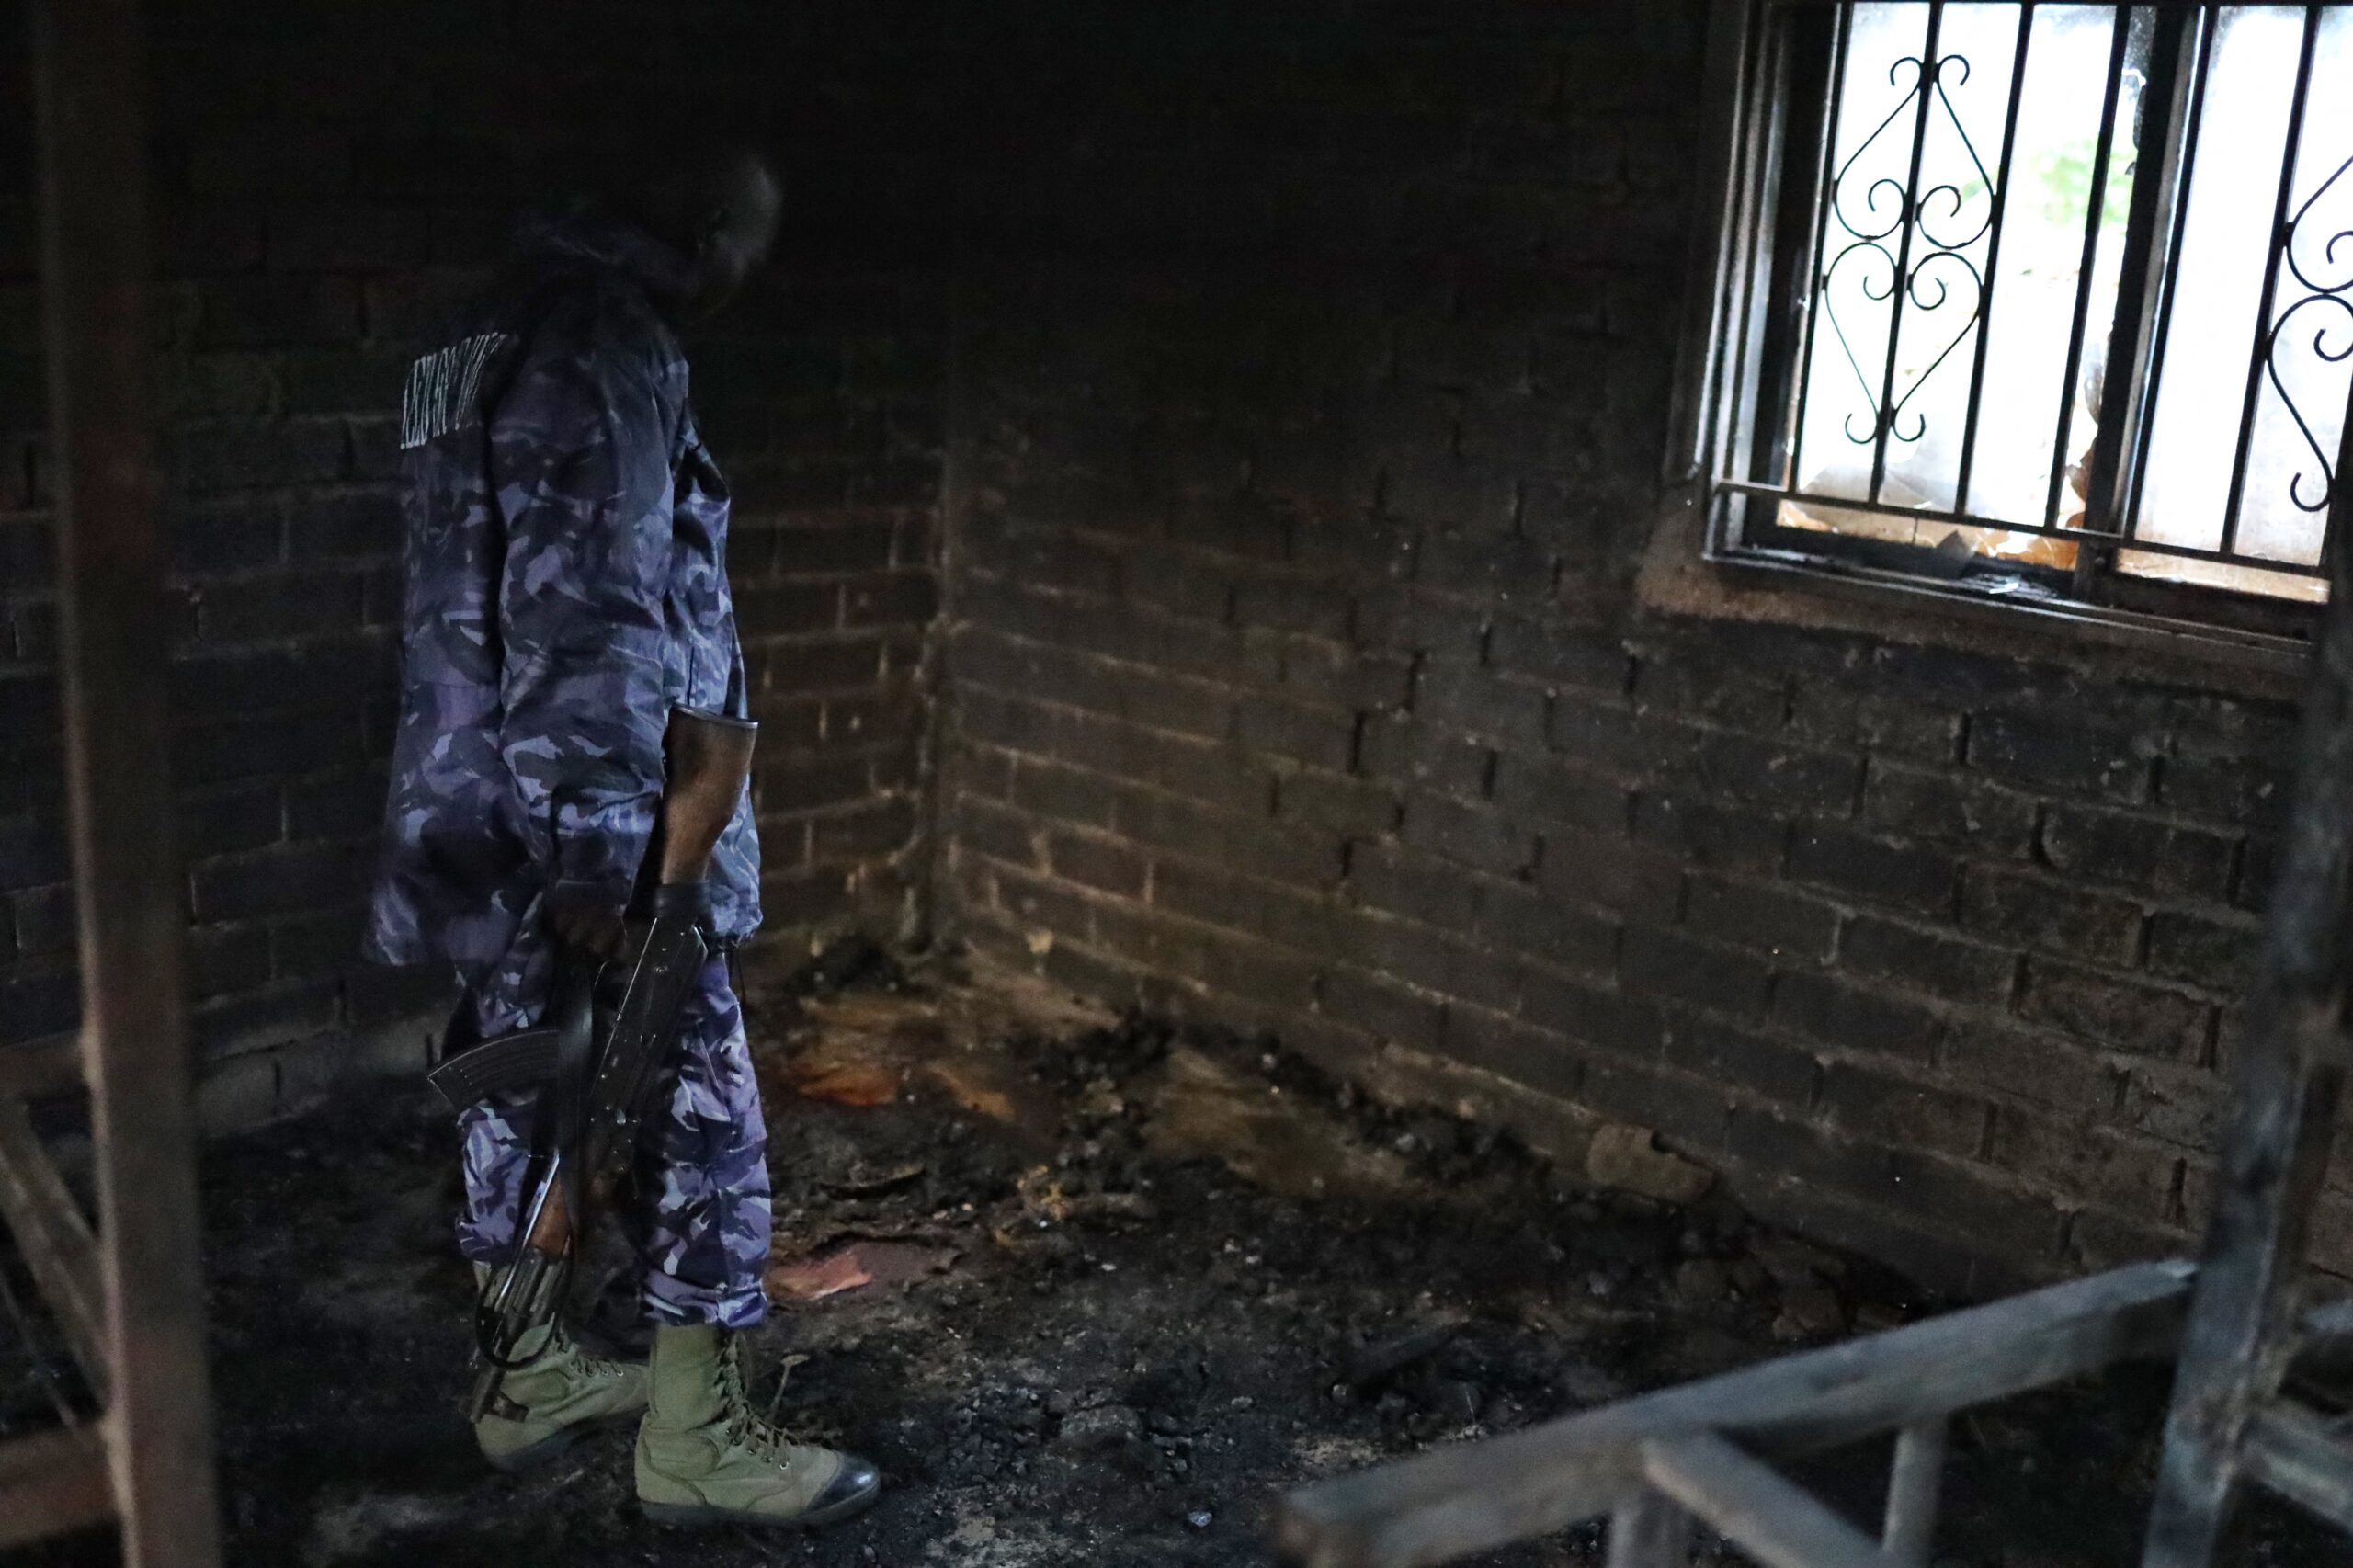 Σφαγή στην Ουγκάντα: Η αντιπολίτευση ζητά τον άμεσο επαναπατρισμό μονάδων των ένοπλων δυνάμεων για την ασφάλεια της χώρας